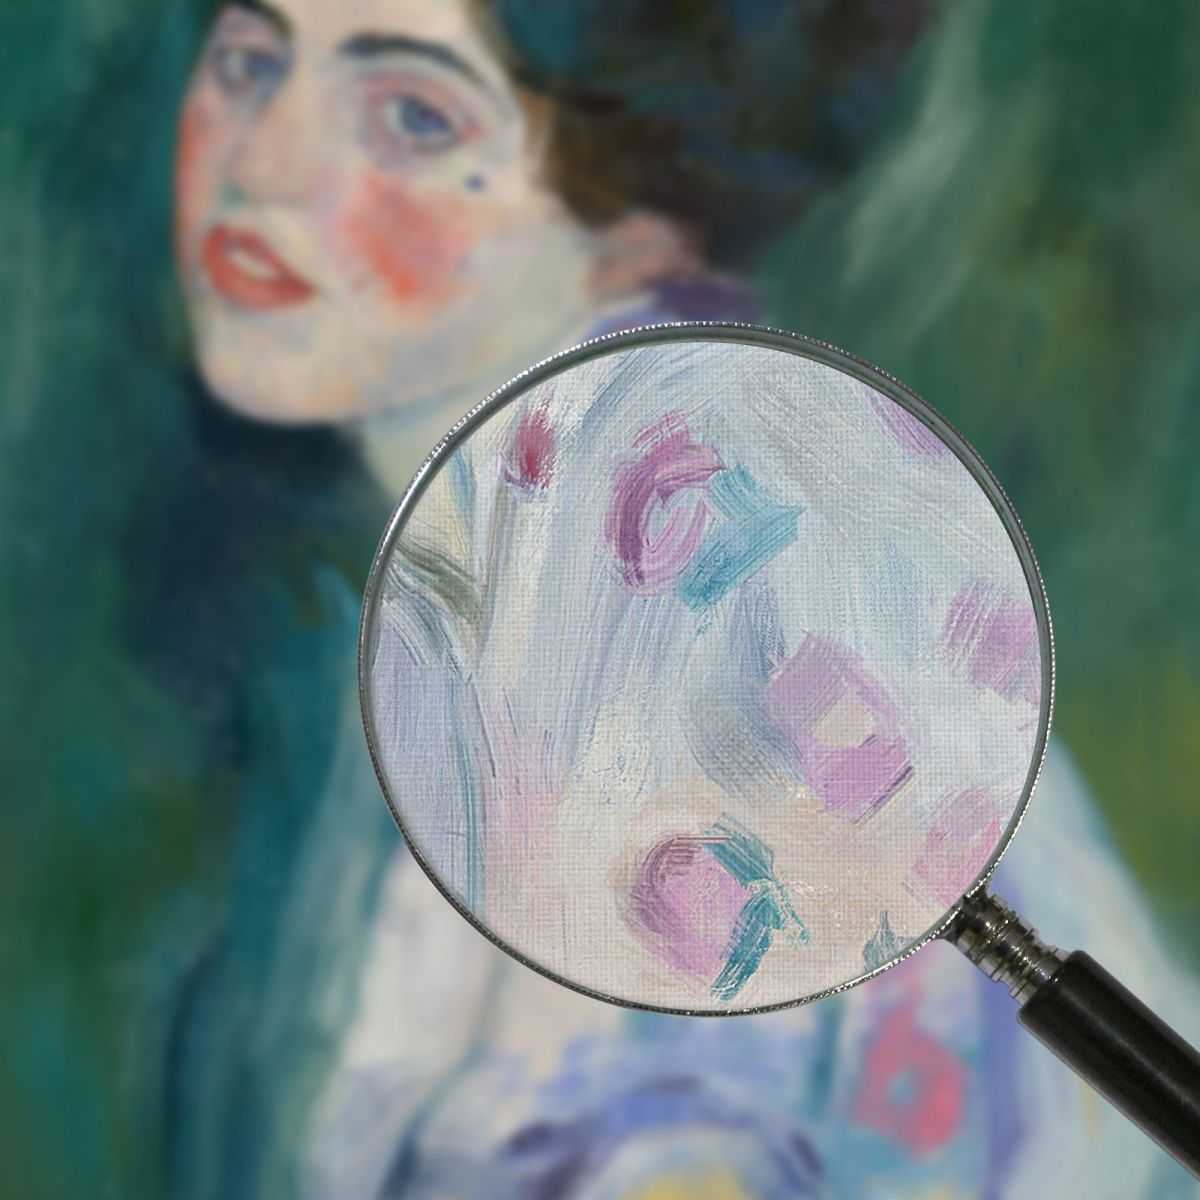 Portrait Of A Young Woman Gustav Klimt canvas print KG46